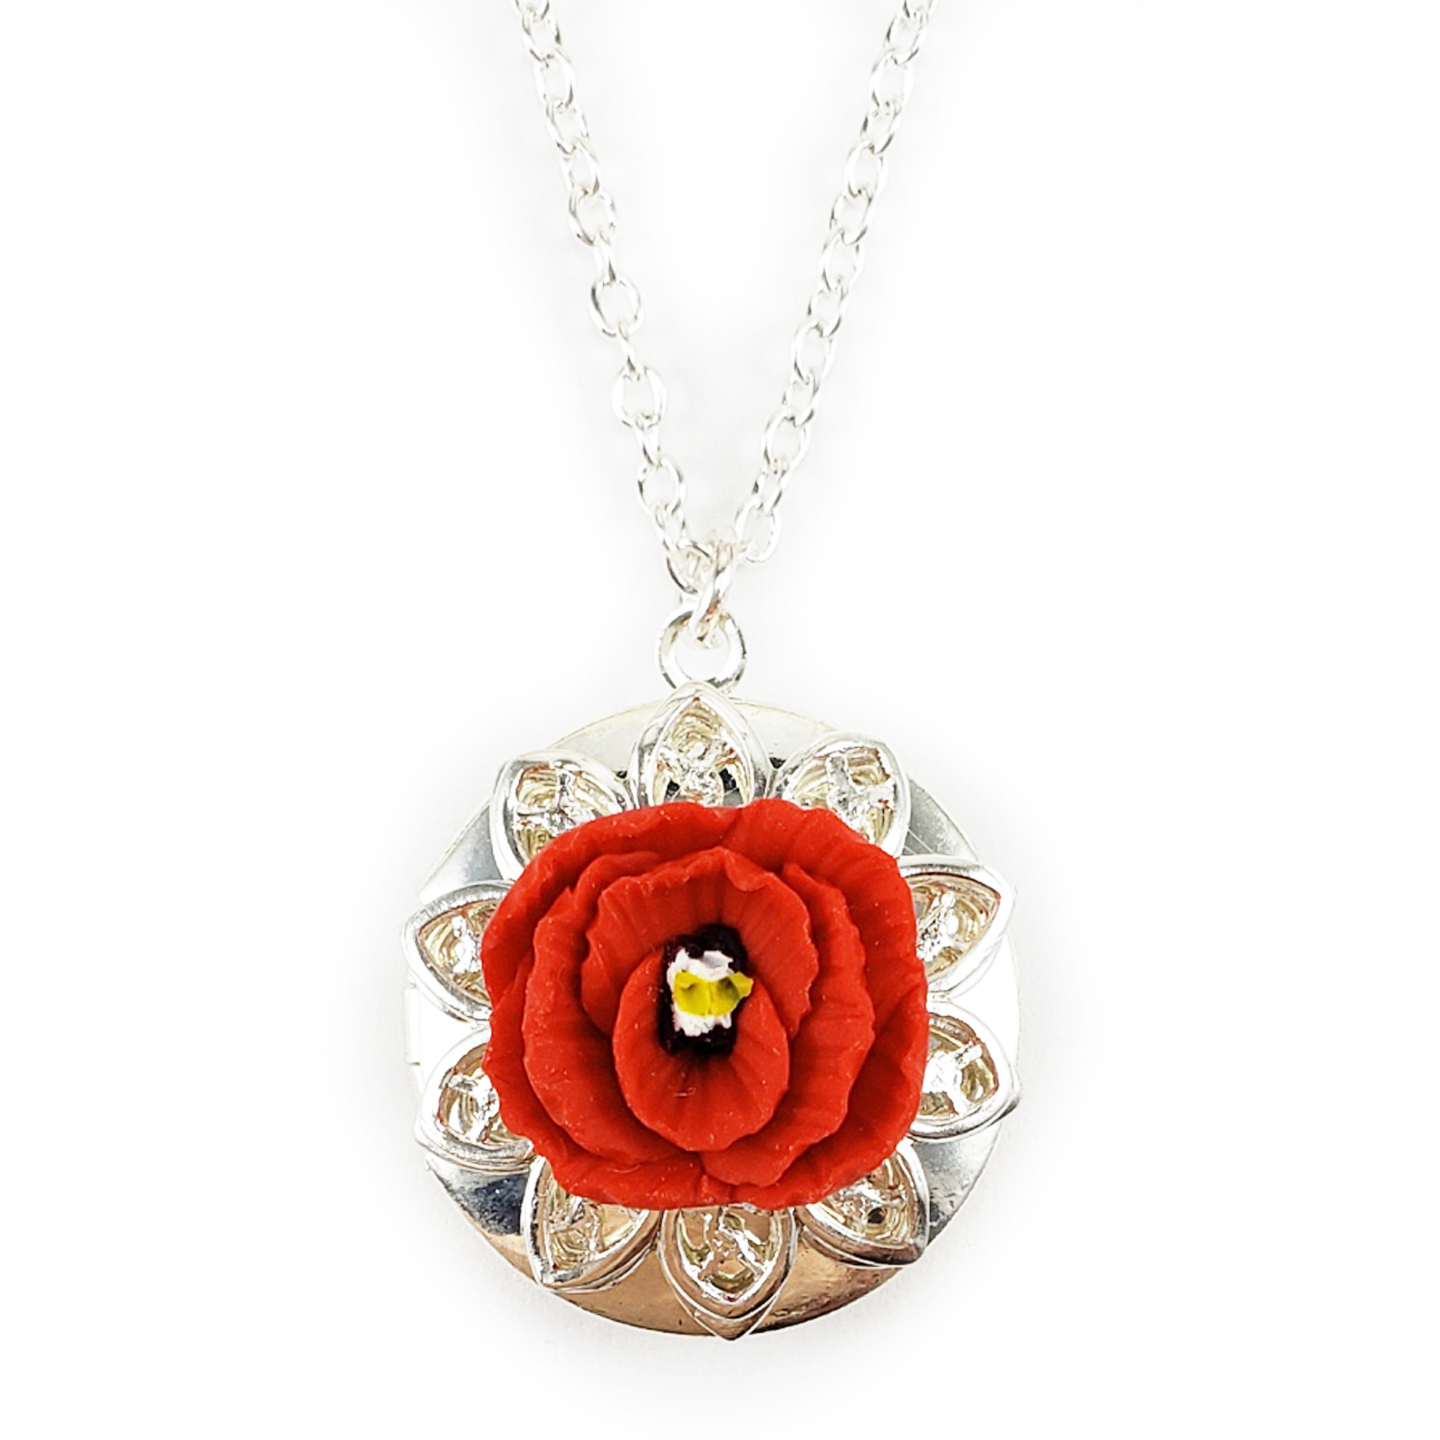 Poppy White & Red Poppy ~ Flower & Bird Print Pendant Necklace 12068 Handmade 